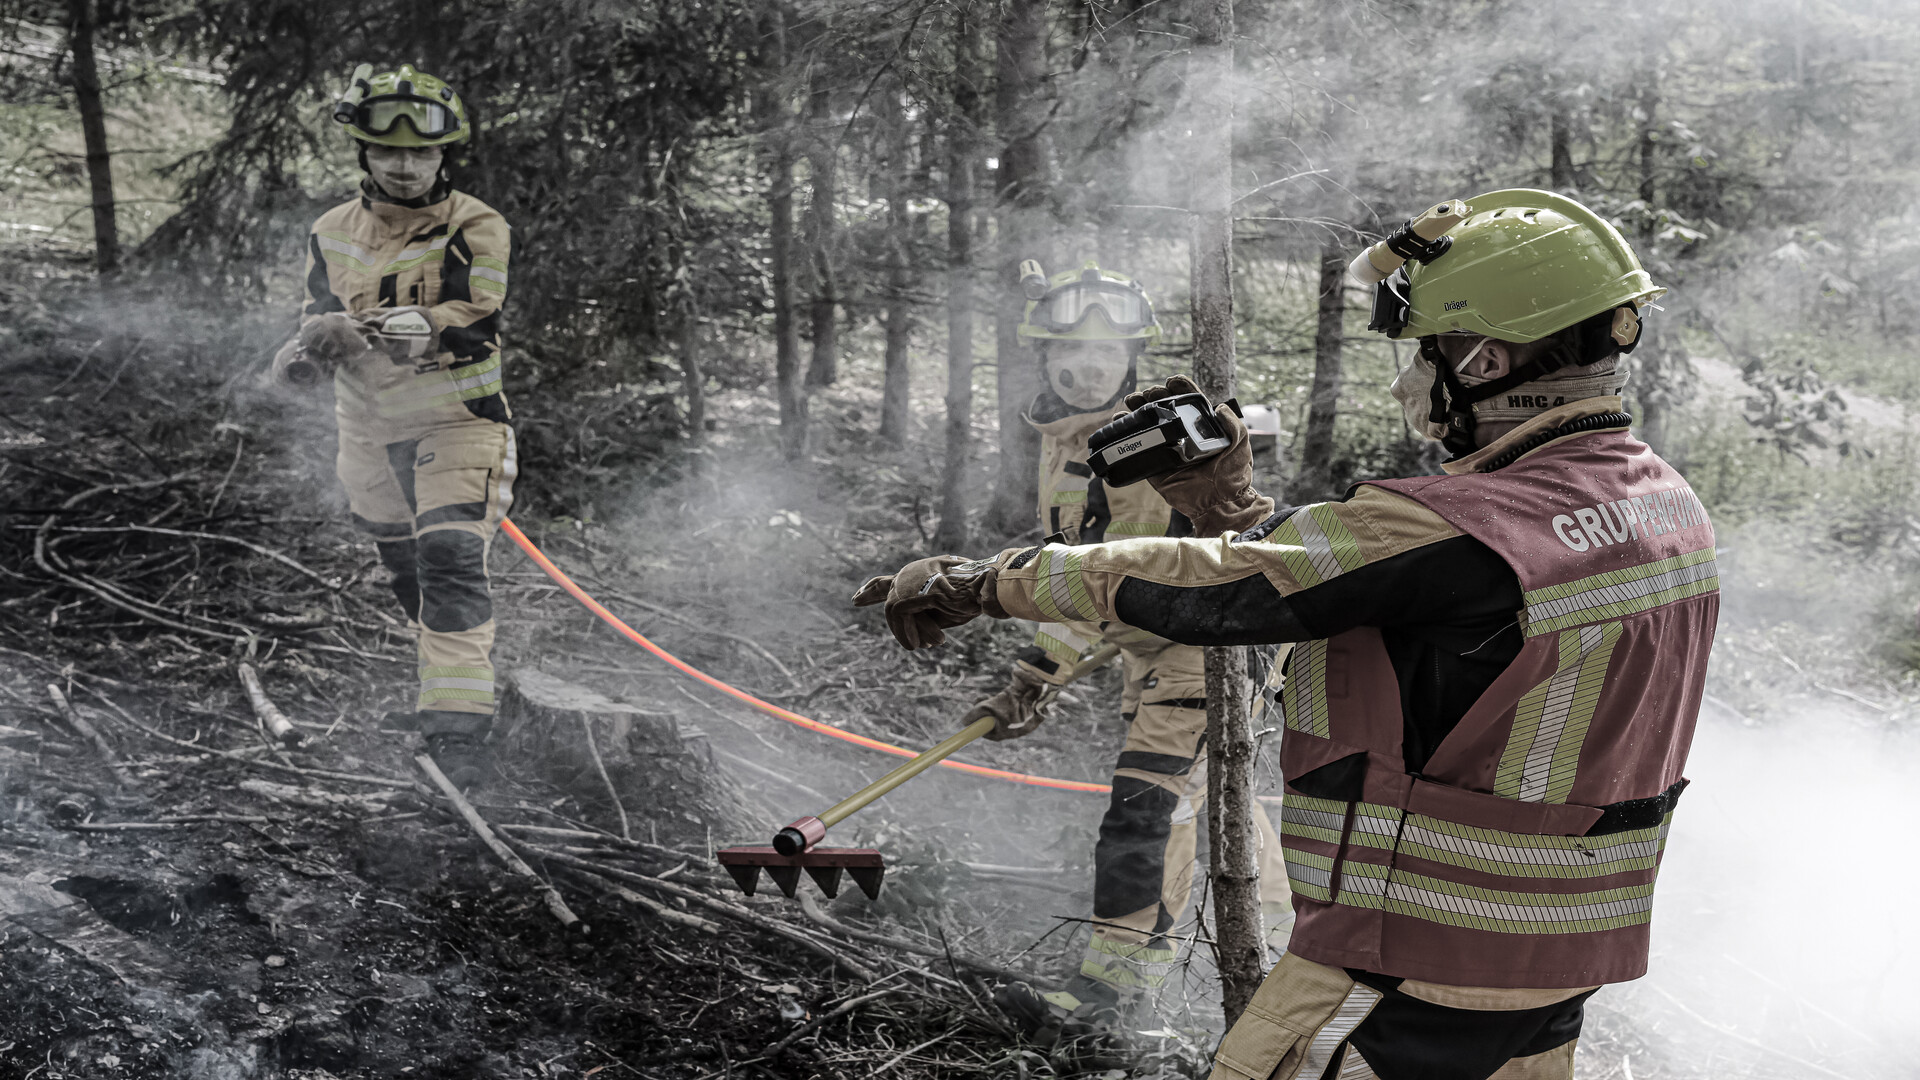 GH Waldbrandschläuche im Einsatz beim Eindämmen eines Vegetationsbrandes | © GH